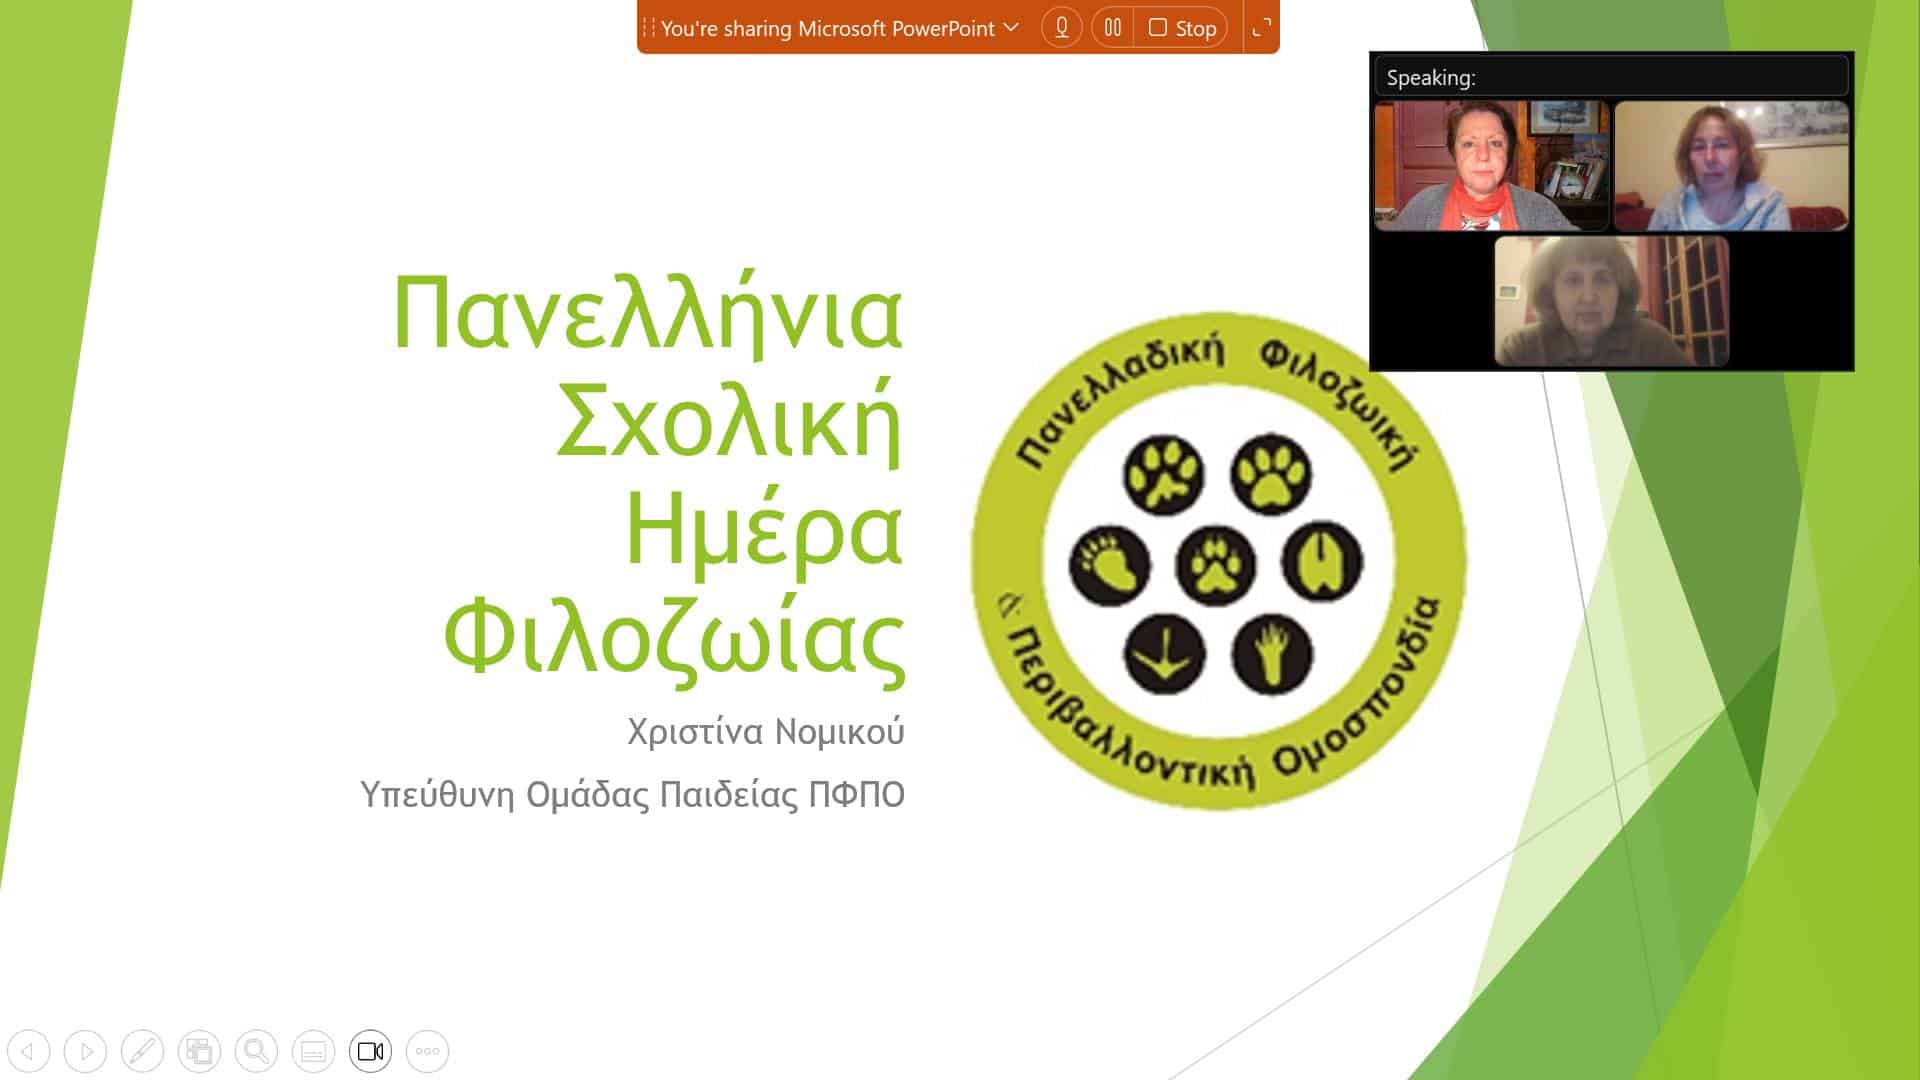 Διαδικτυακό σεμινάριο για τους εκπαιδευτικούς του Δικτύου Φιλόζωων Σχολείων της ΠΦΠΟ